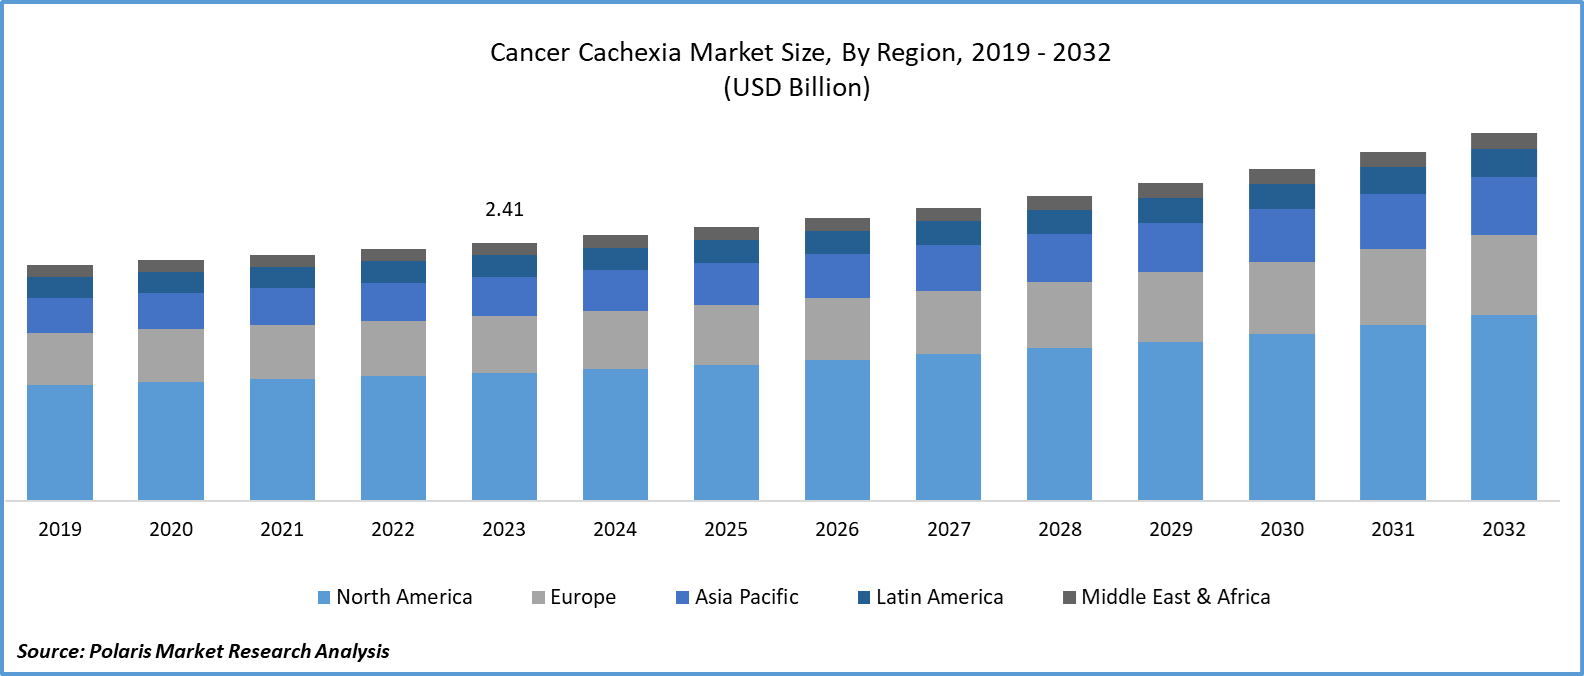 Cancer Cachexia Market Size